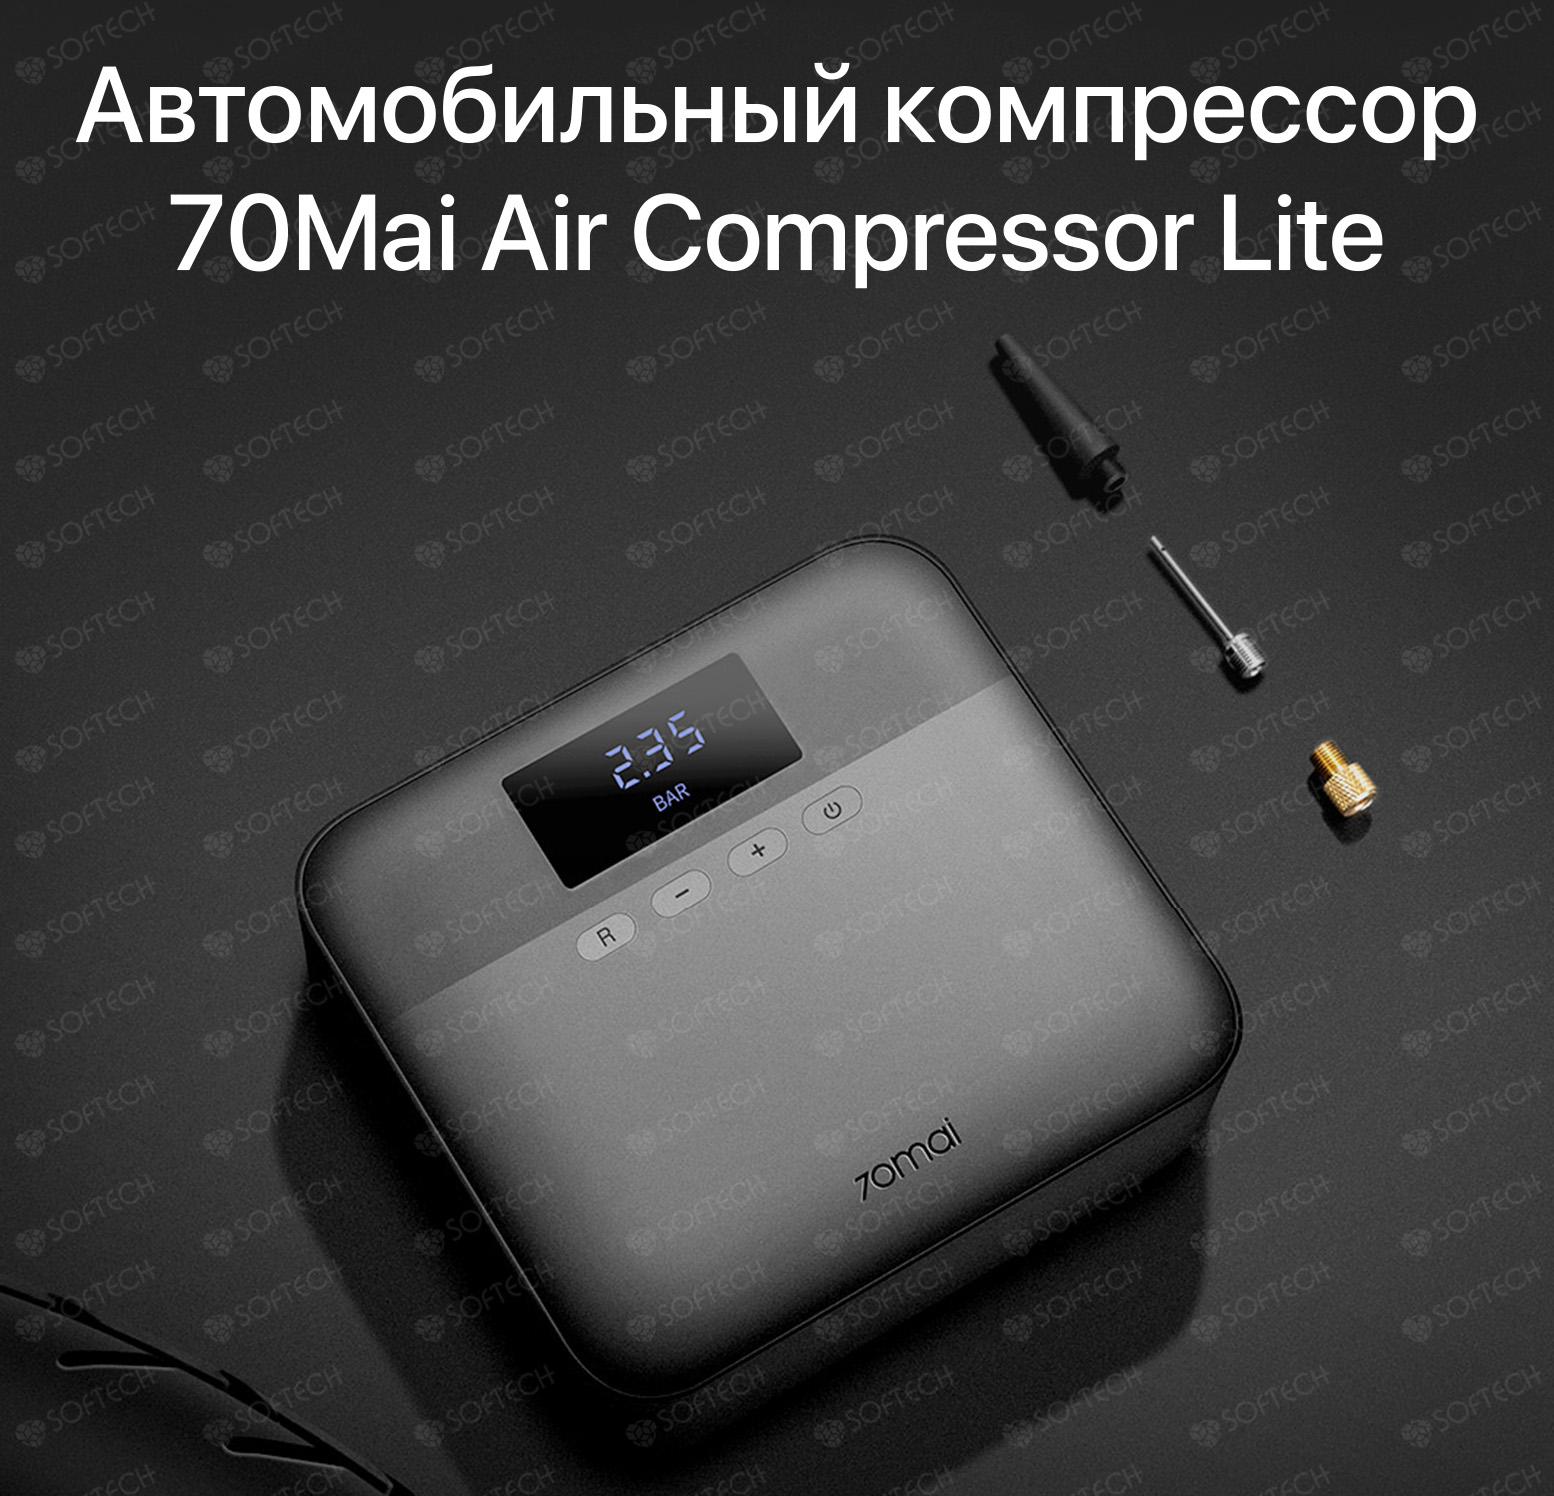 Компрессор 70mai air compressor lite. Автомобильный компрессор Xiaomi 70mai Air Compressor Lite. Автомобильный компрессор 70mai Air Compressor MIDRIVE tp01. Автомобильный компрессор Xiaomi 70mai Air Compressor MIDRIVE tp01. Автомобильный компрессор 70mai Air Compressor Lite черный.